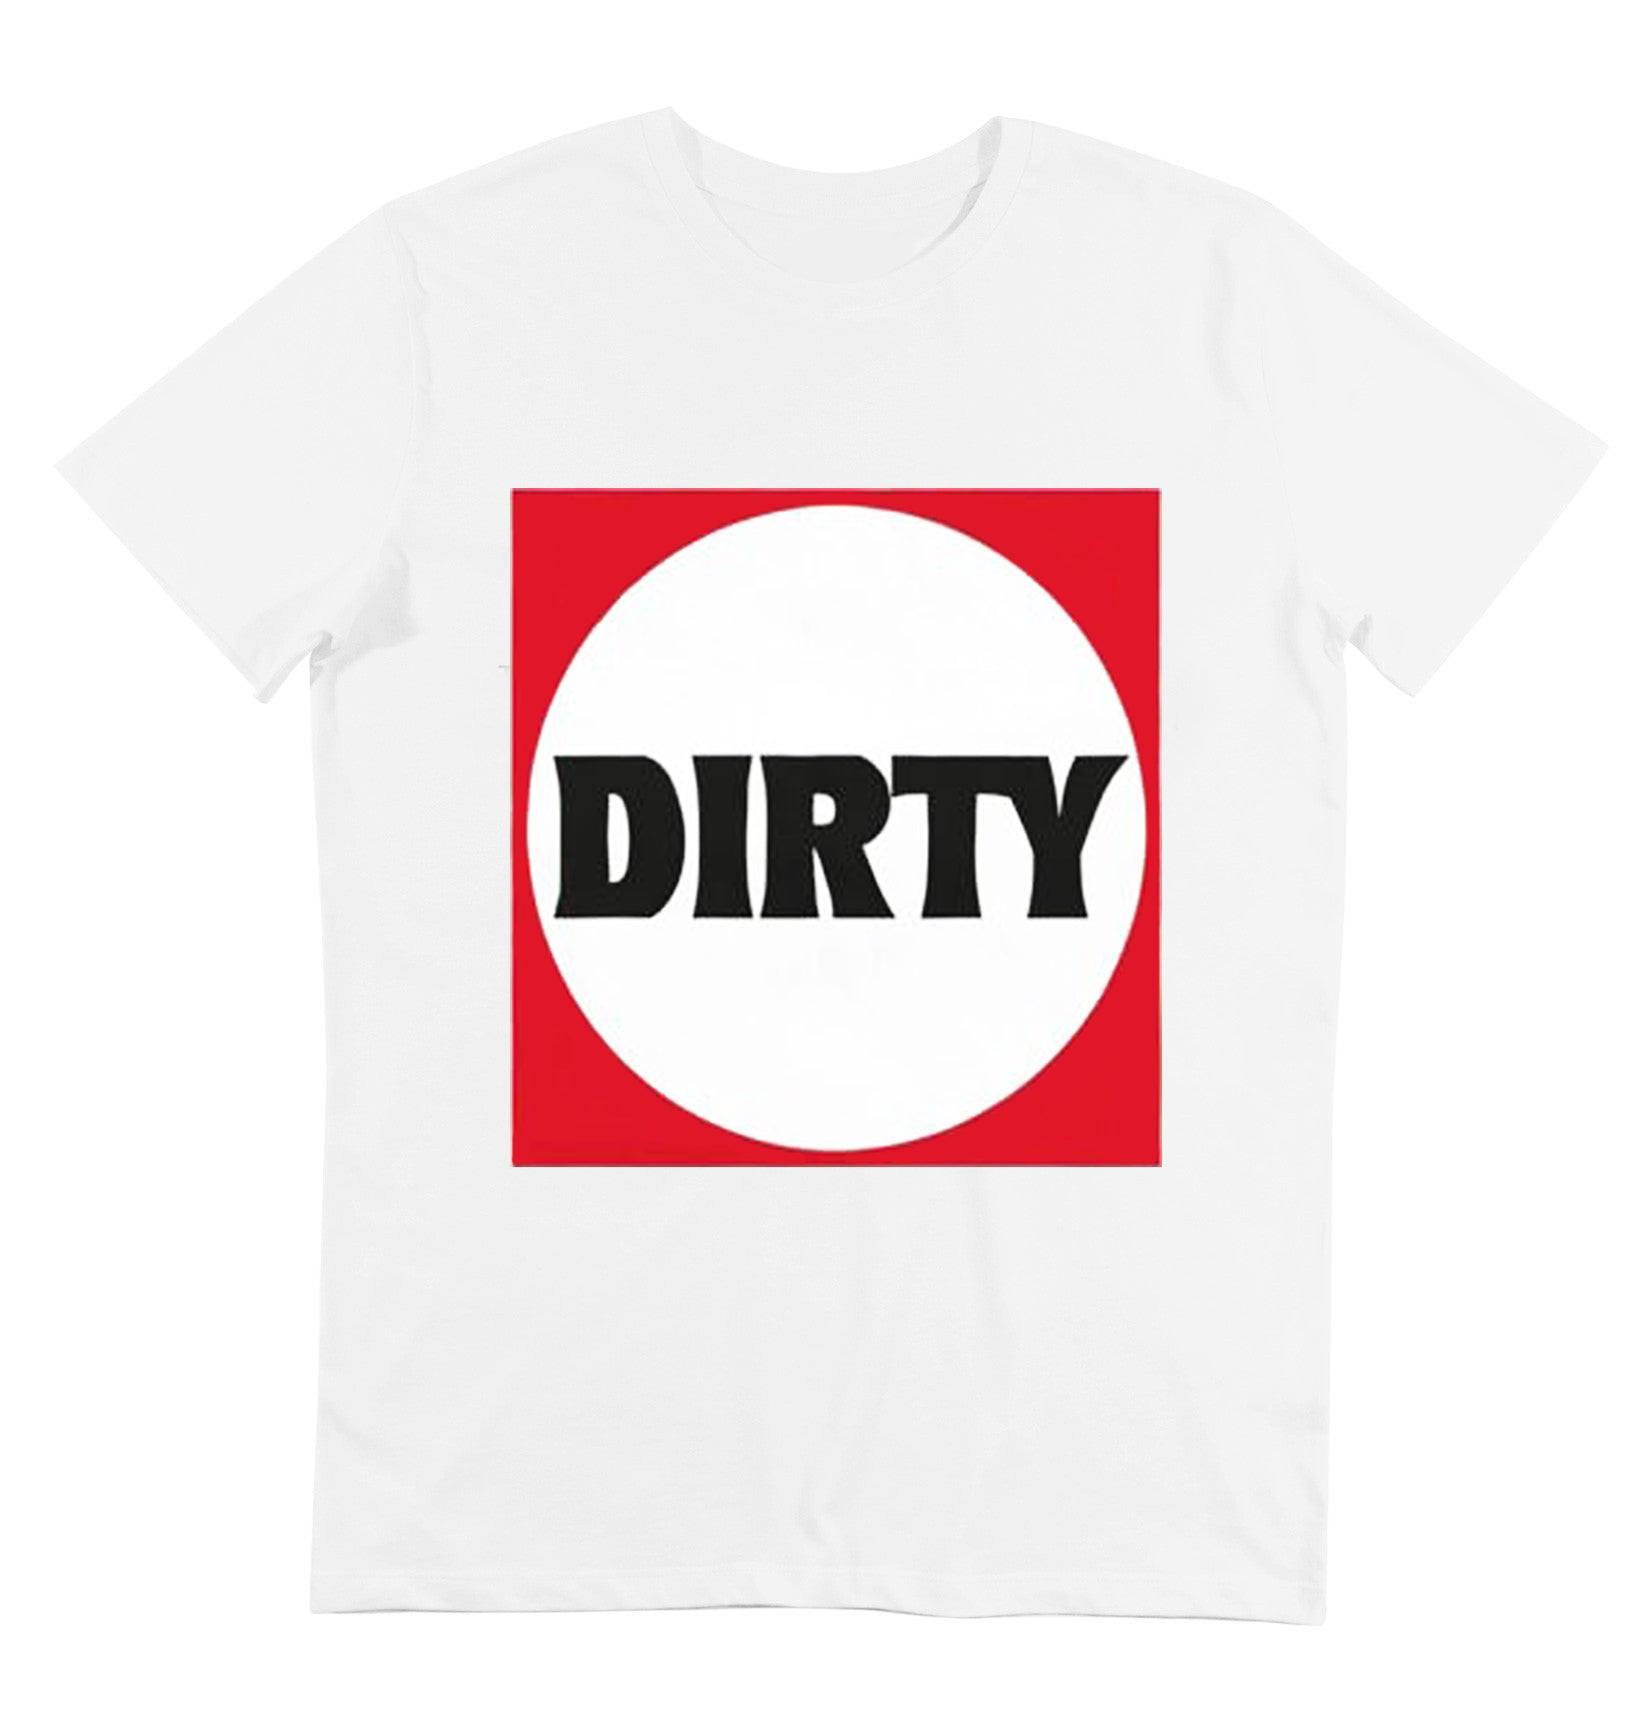 T-shirt pour homme blanc parodiant le logo de darty - Imprimé dirty - glboutik.com